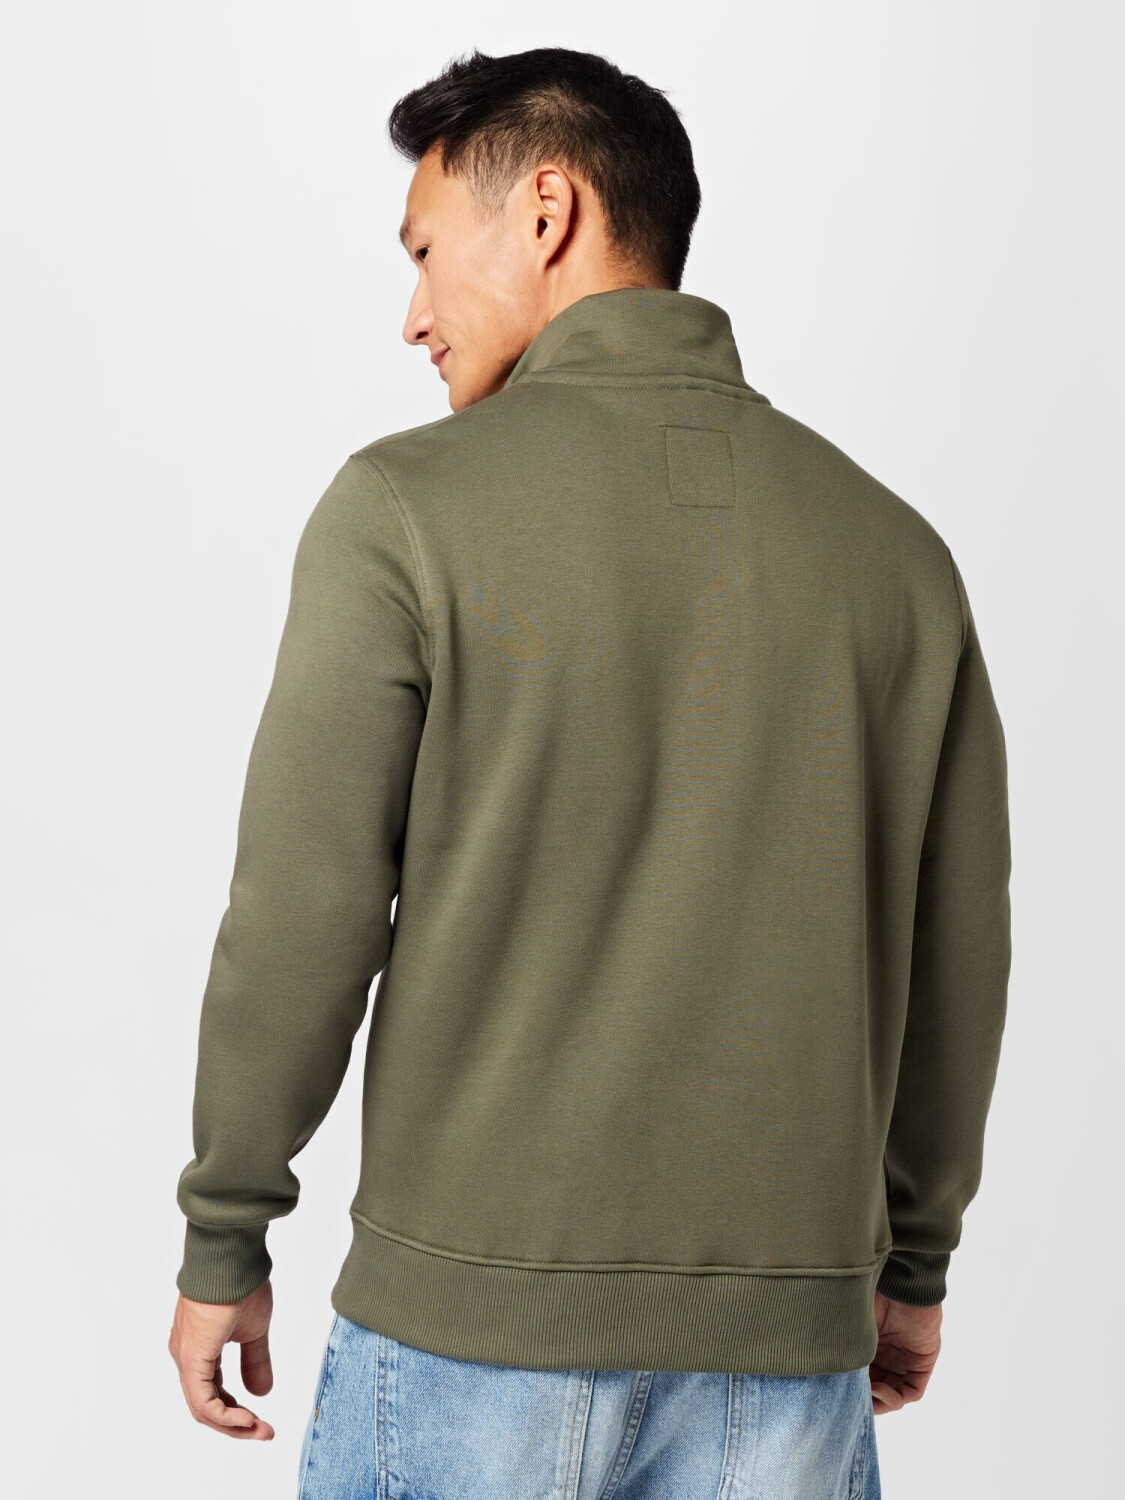 Alpha Industries Half Zip 50,99 € ab (108308-142) Sweatshirt bei Preisvergleich green 